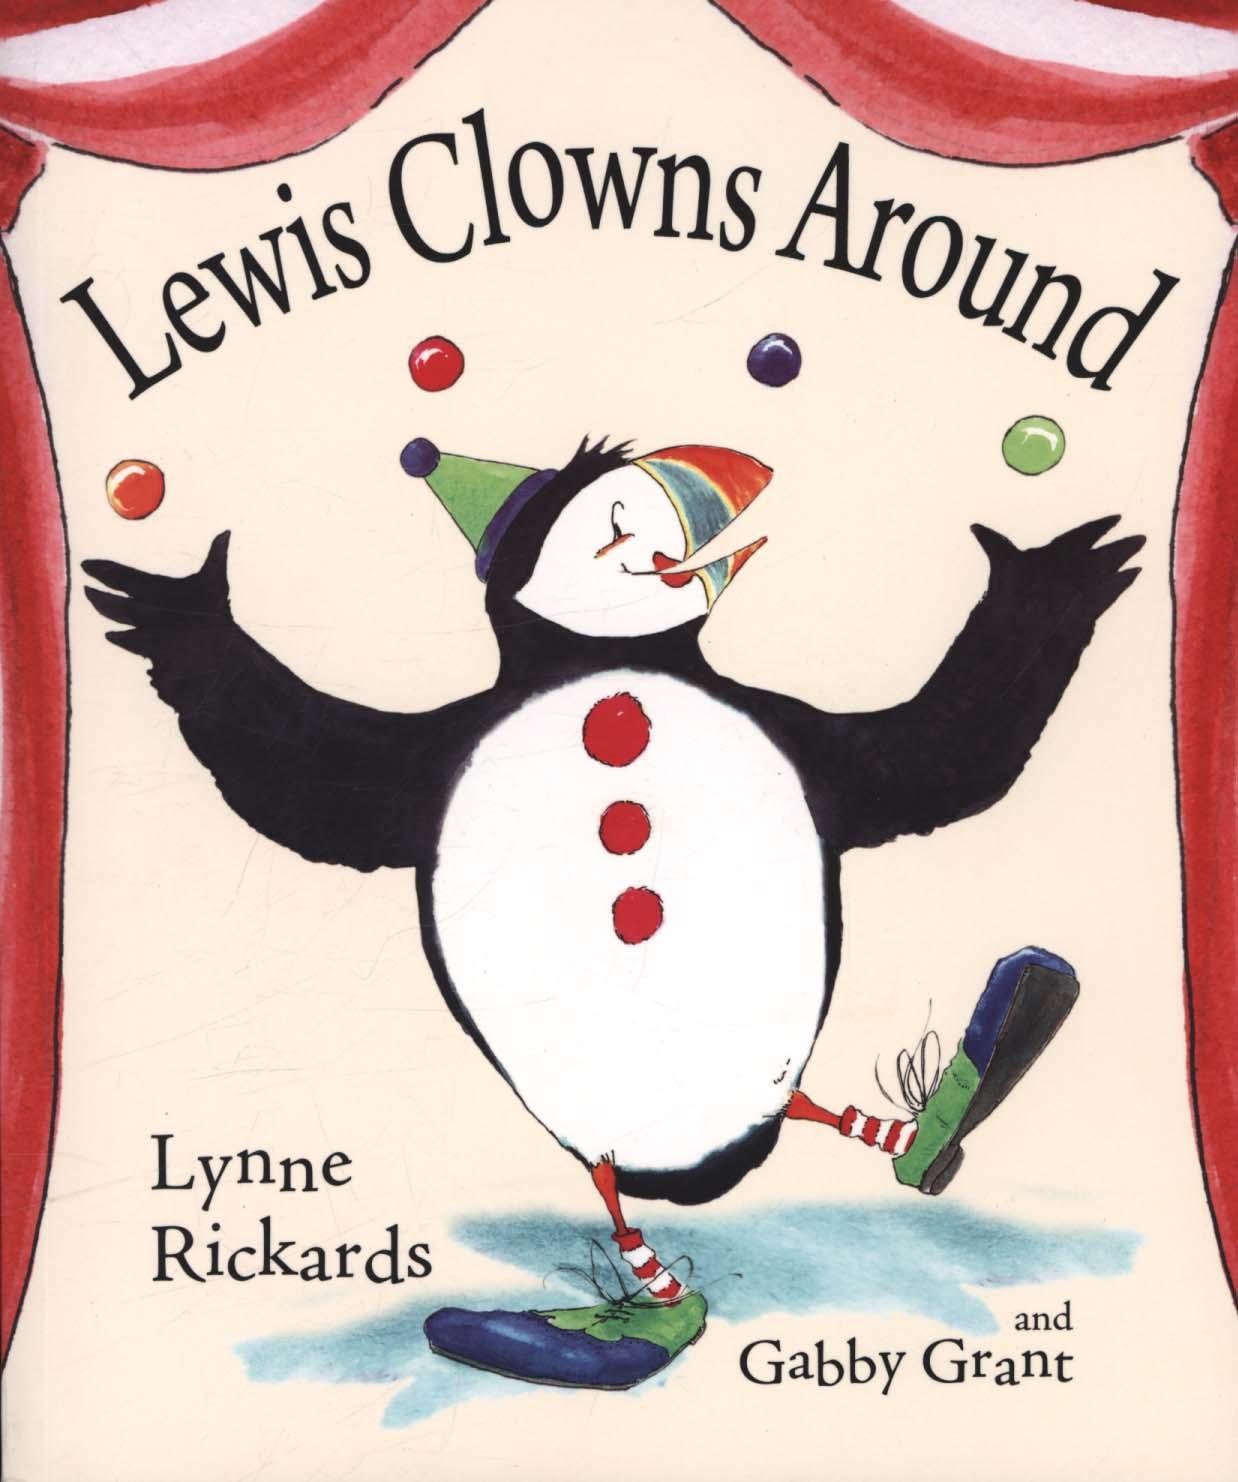 Lewis Clowns Around - Lynne Rickards